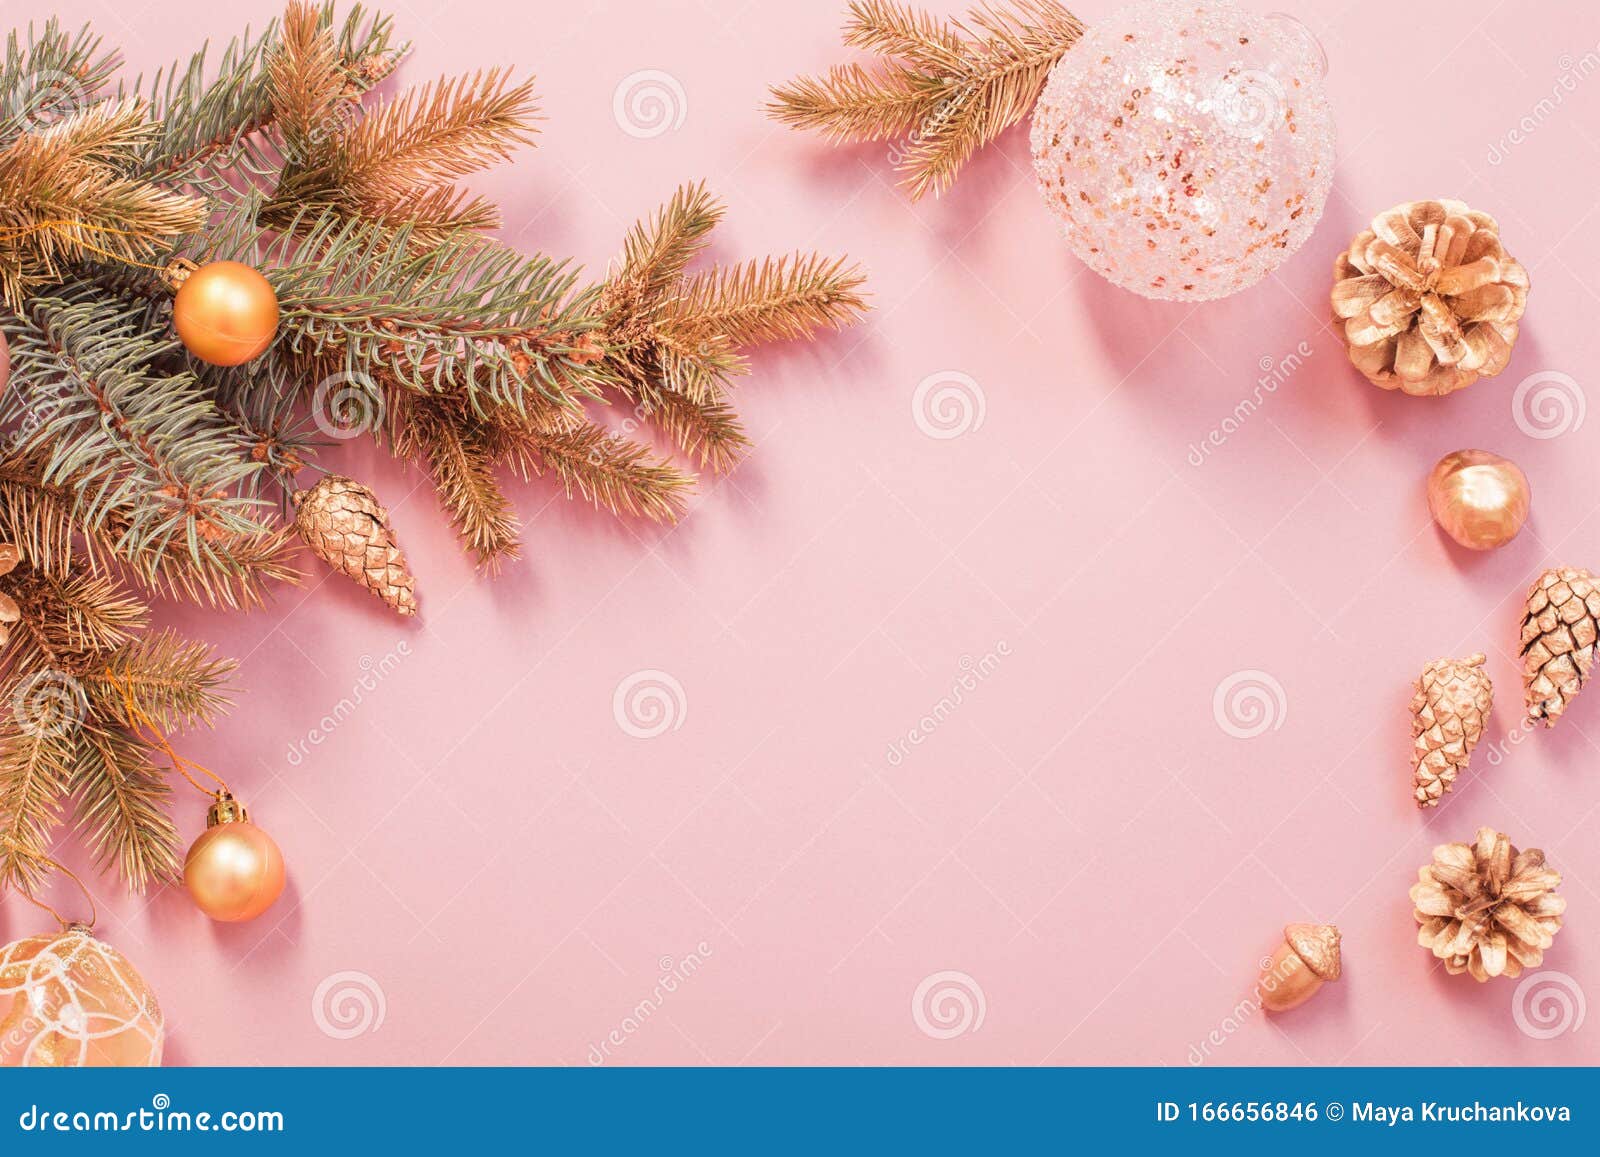 Hình nền Giáng sinh hiện đại màu vàng hồng đang chờ đón bạn. Không còn những hình ảnh giáng sinh quen thuộc, mà một nền tảng hoàn toàn mới với màu vàng hồng sang trọng giữa những họa tiết hiện đại. Chắc chắn nó sẽ mang lại cho bạn cảm giác mới lạ và tươi mới.